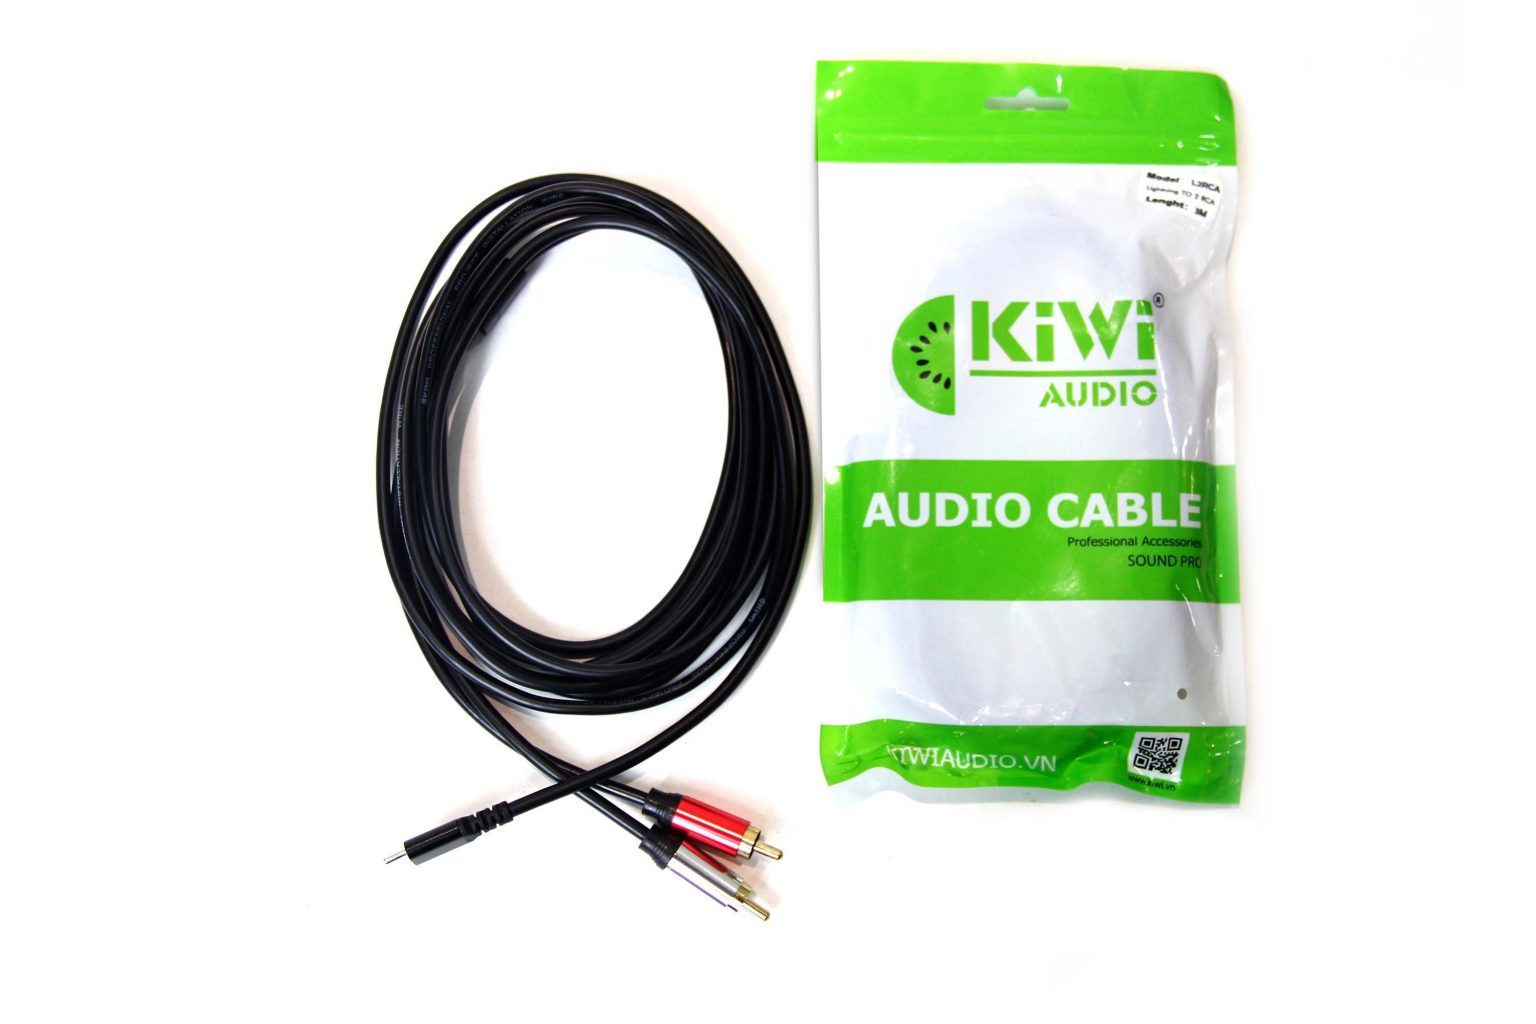 Dây cáp âm thanh Kiwi từ điện thoại lphone sang bông sen (AV) dài 1.5m - Cable Lightnig to RCA - Hàng chính hãng